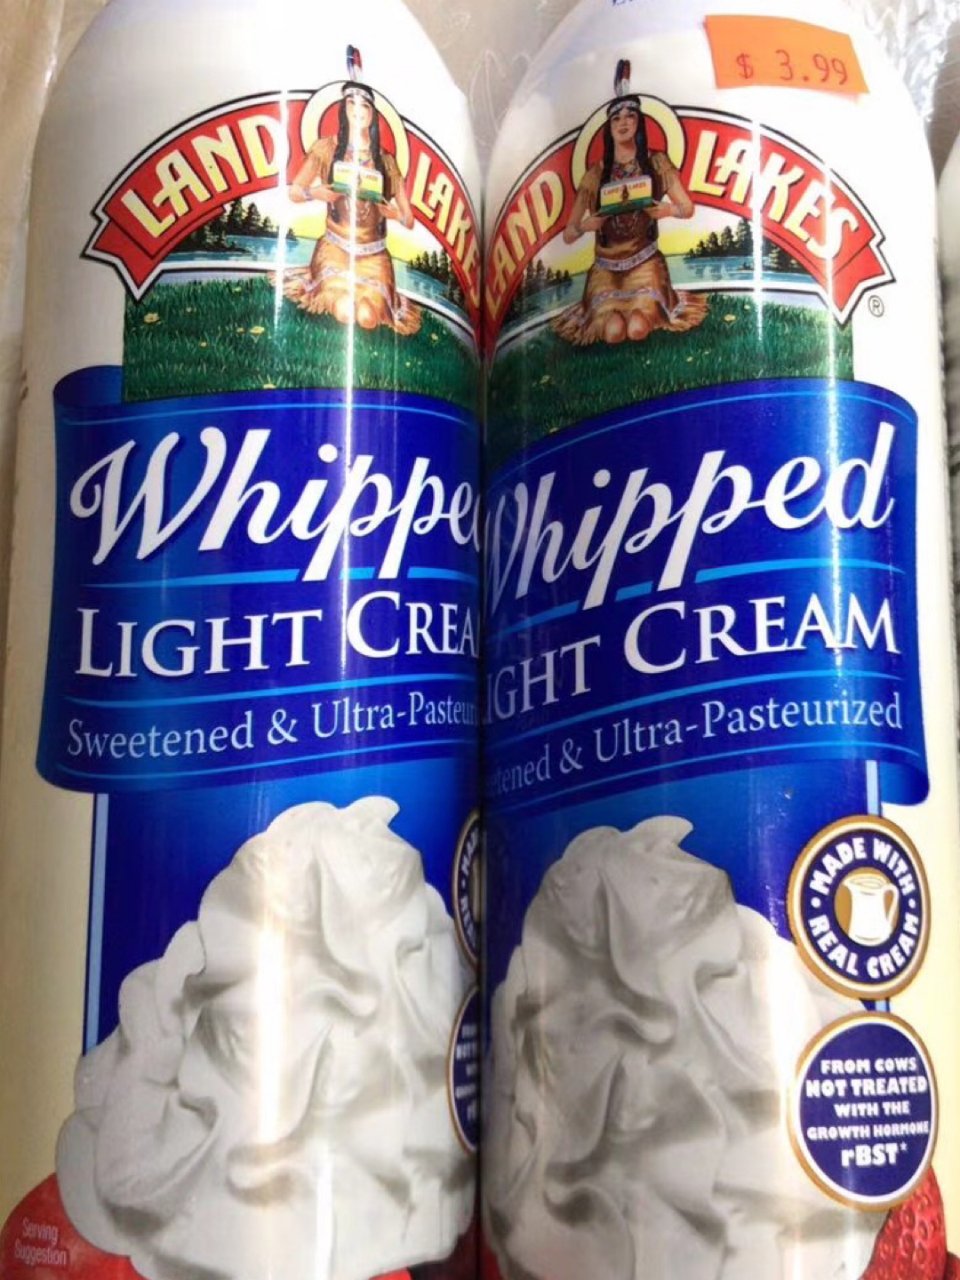 Light cream
